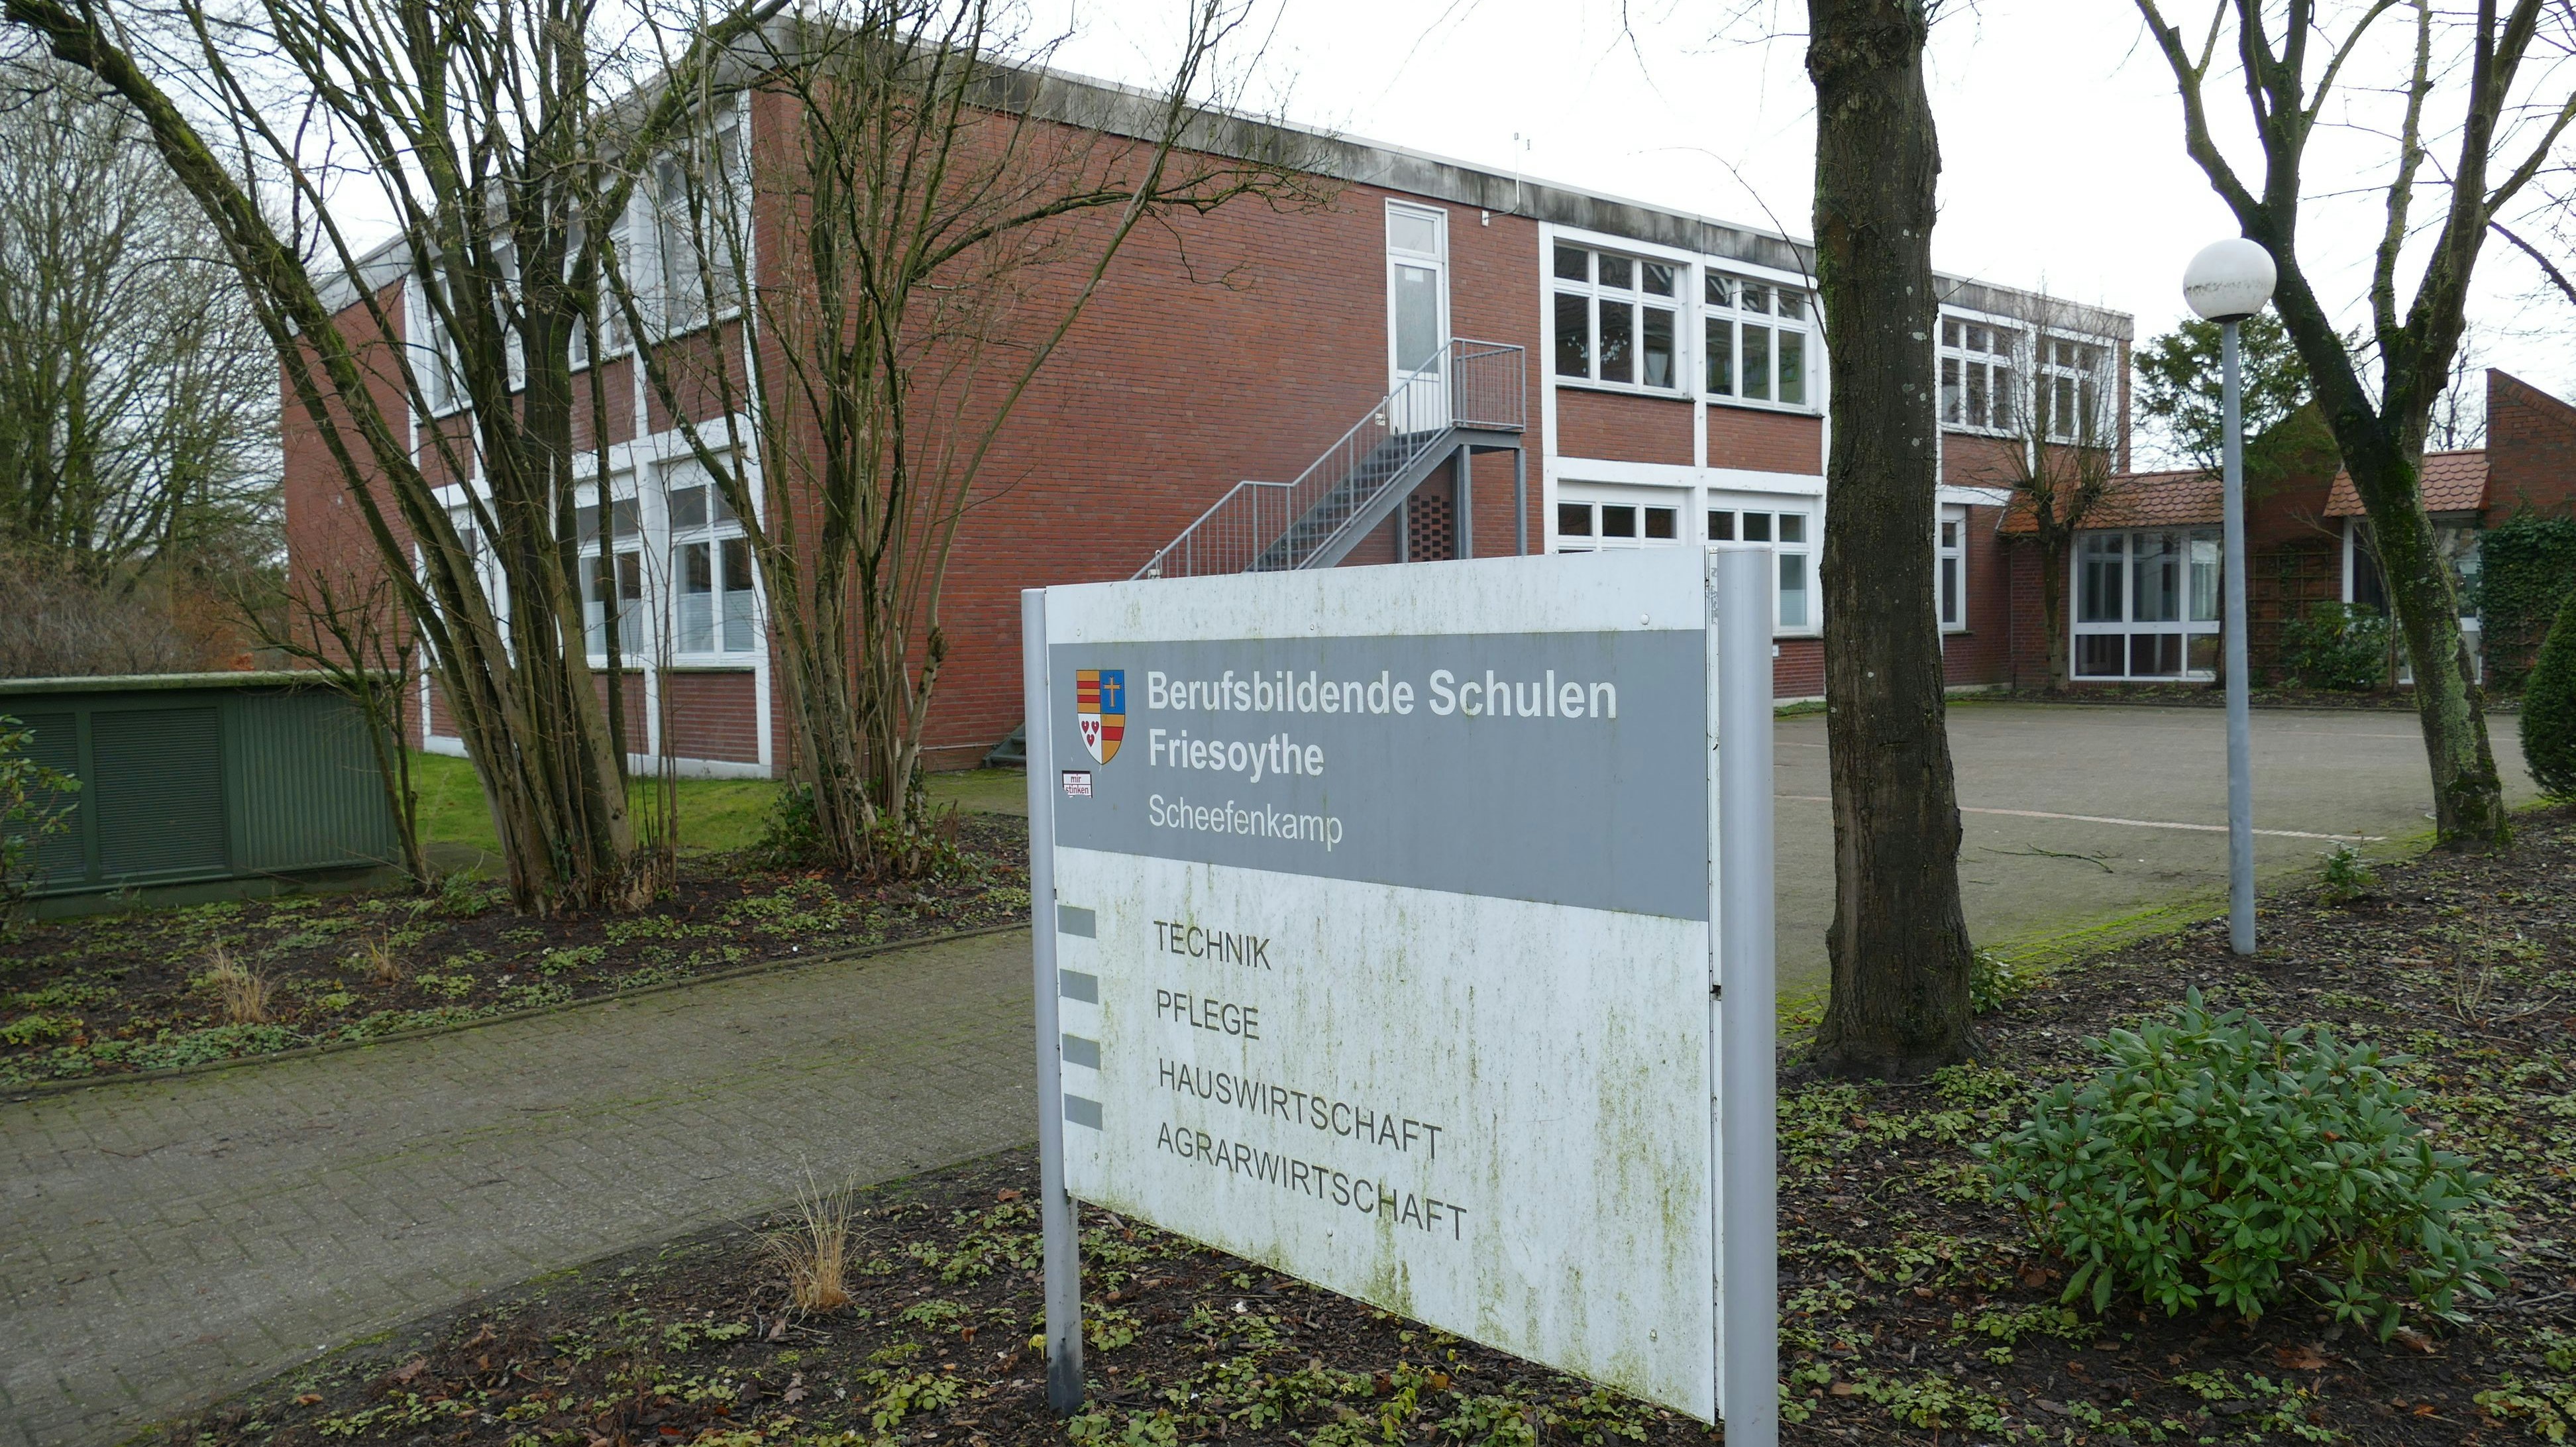 Neues Stockwerk: Der Flachbau am BBS-Standort Scheefenkamp soll aufgestockt werden, um Platz für dringend benötigte neue Unterrichtsräume zu schaffen. Foto: Stix